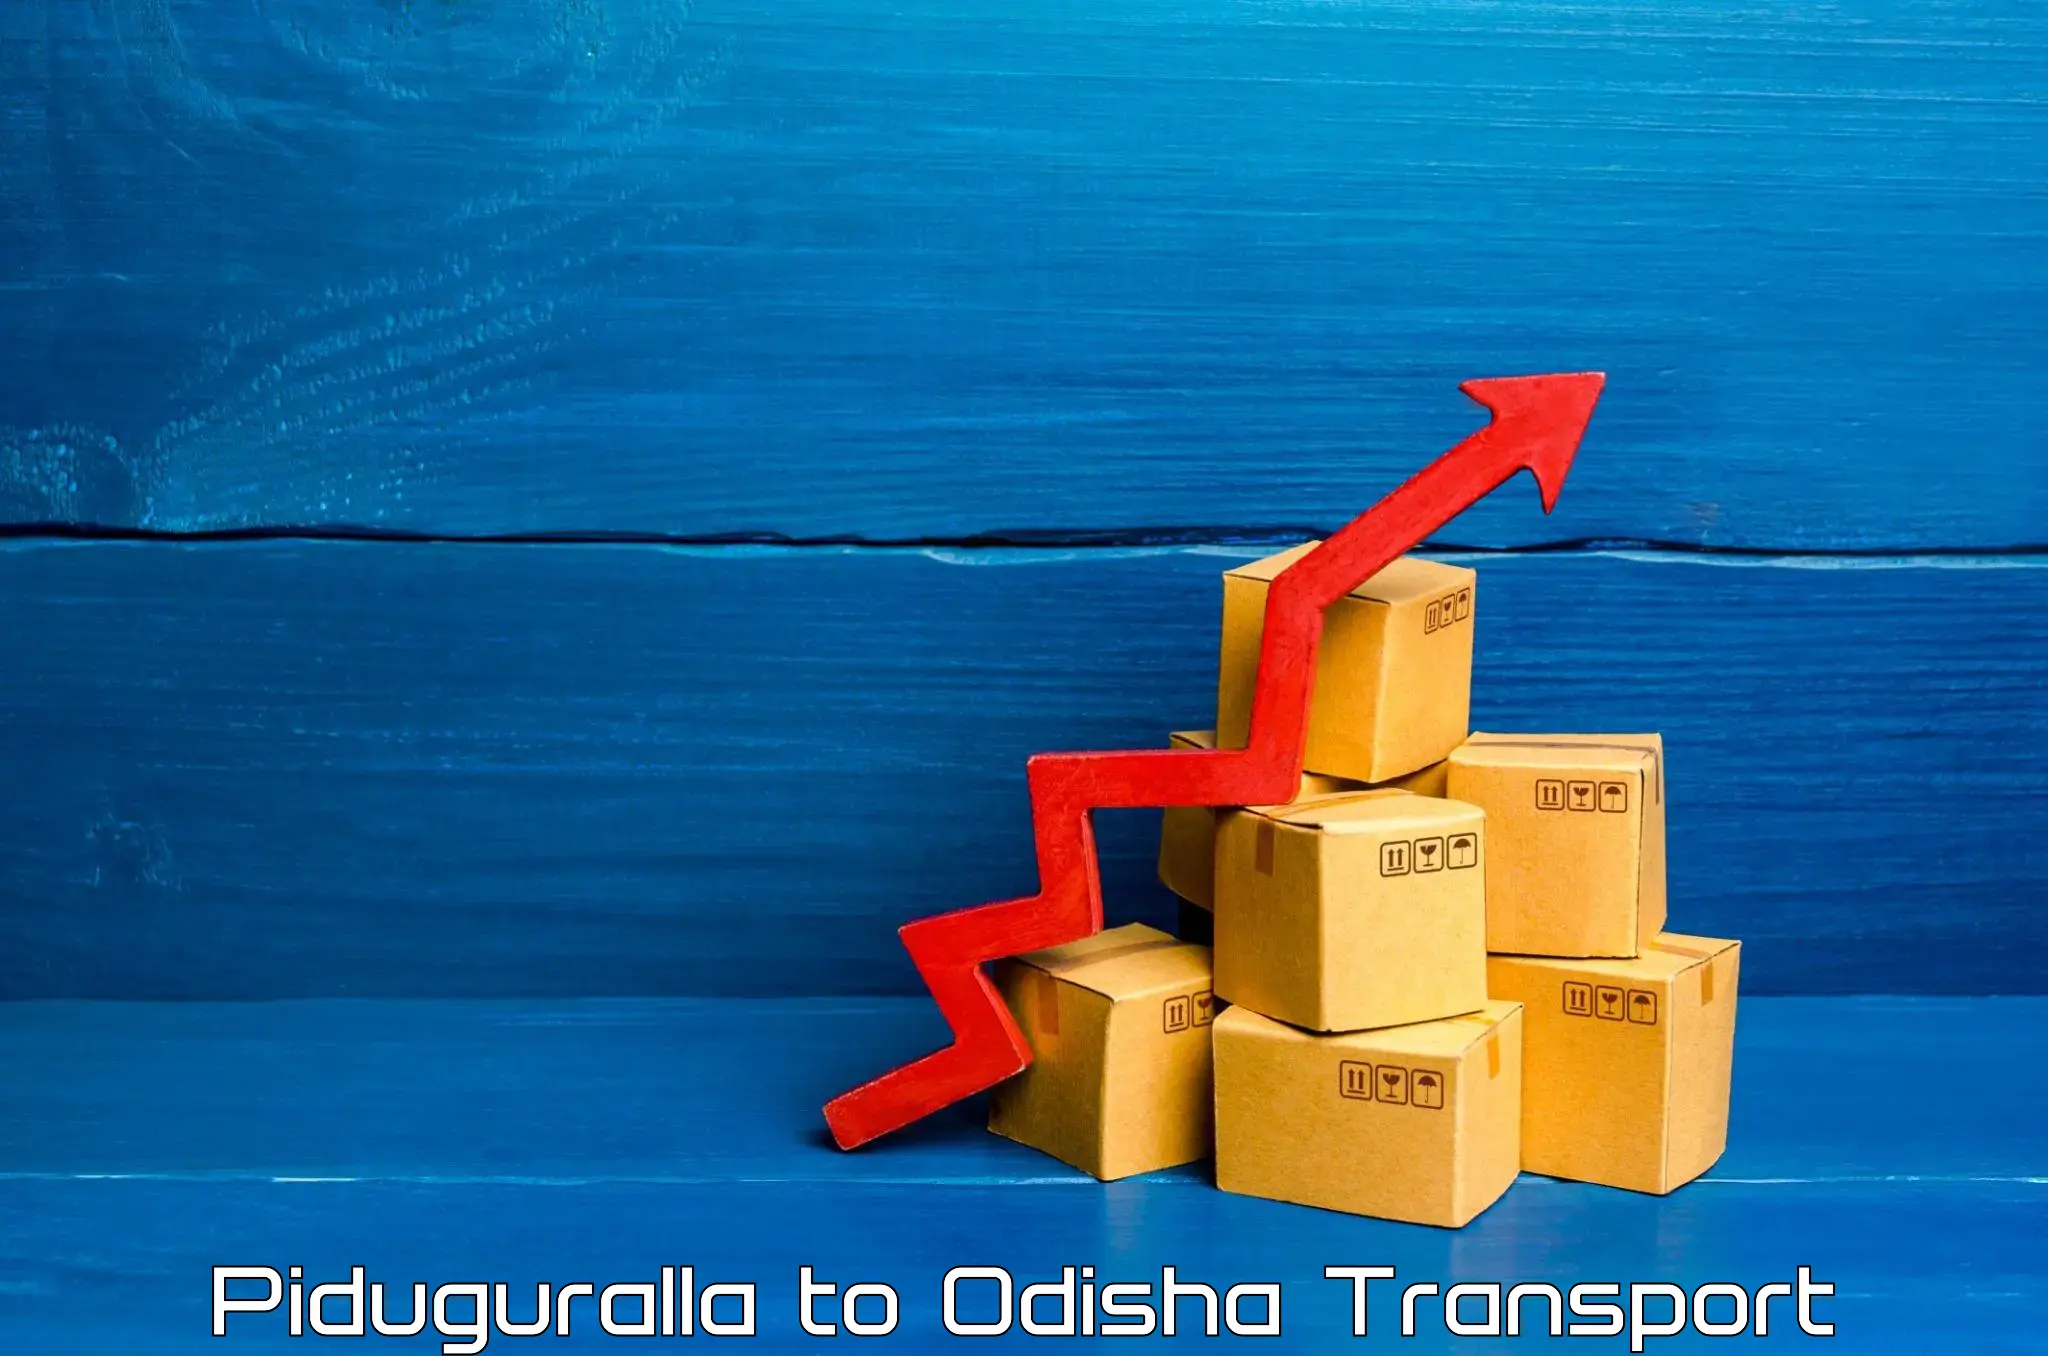 Goods delivery service Piduguralla to Barkote